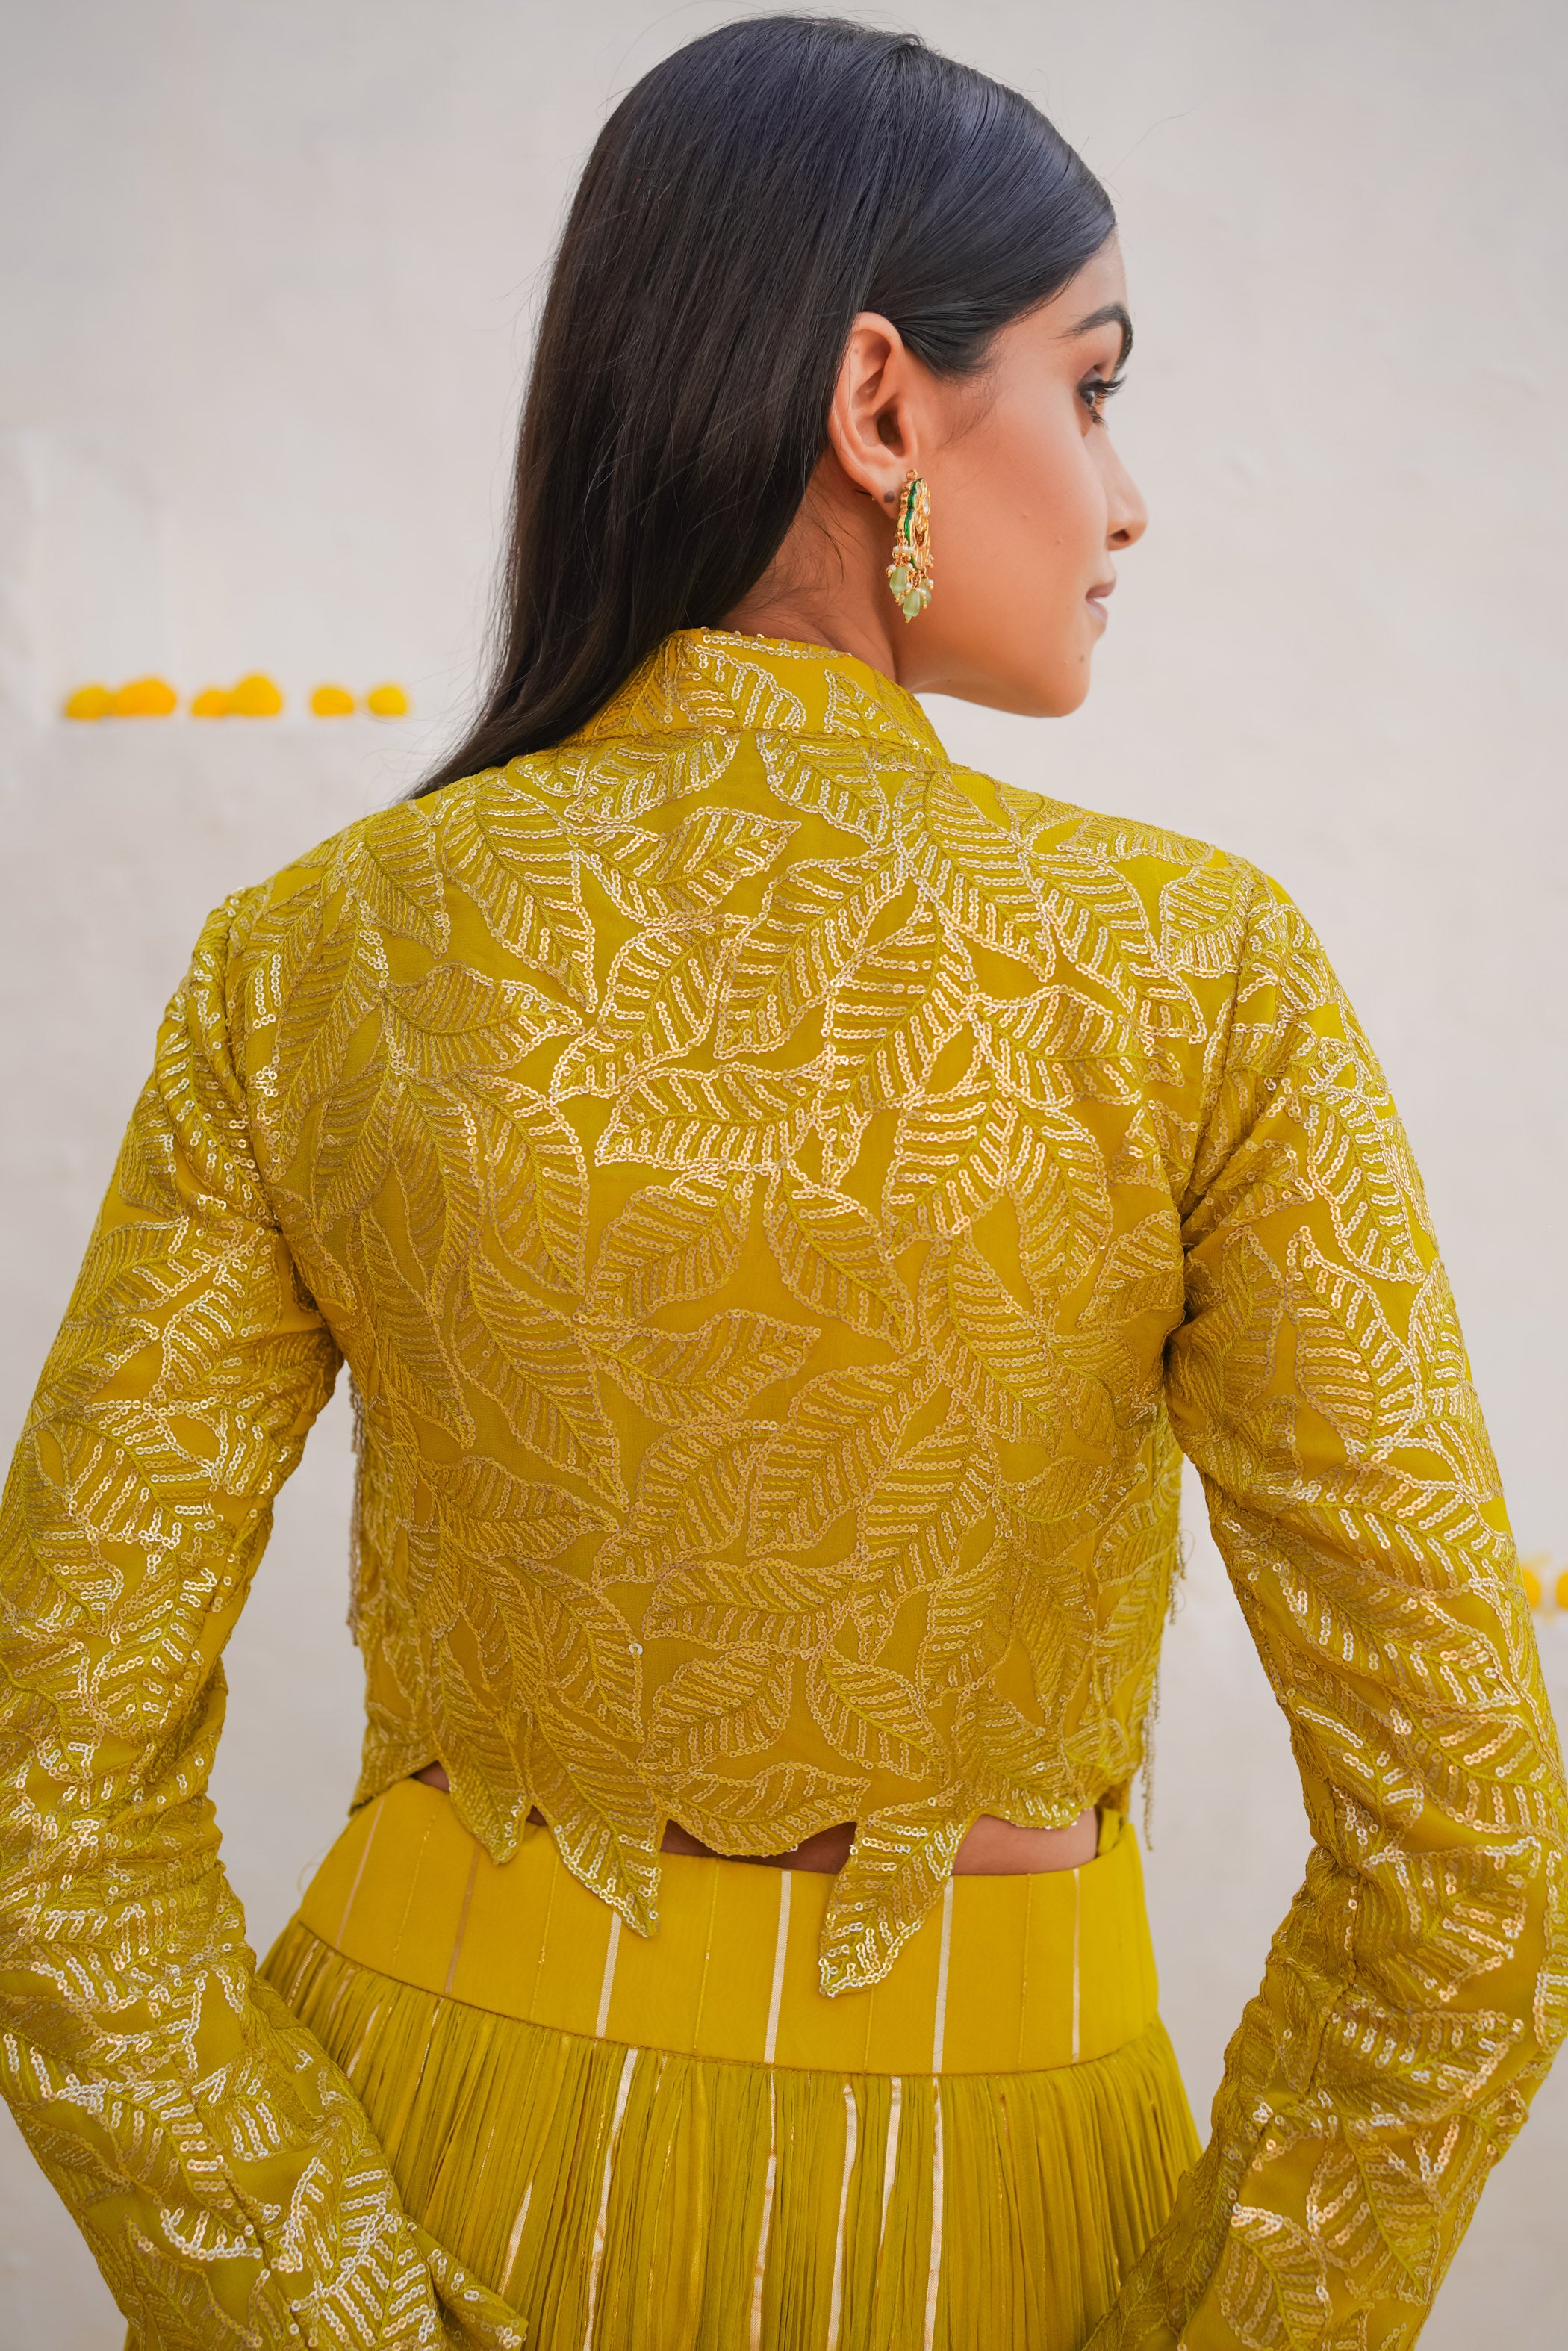 Pritika Vora – Jacket style blouse and lehenga set – Nikaza Asian Couture